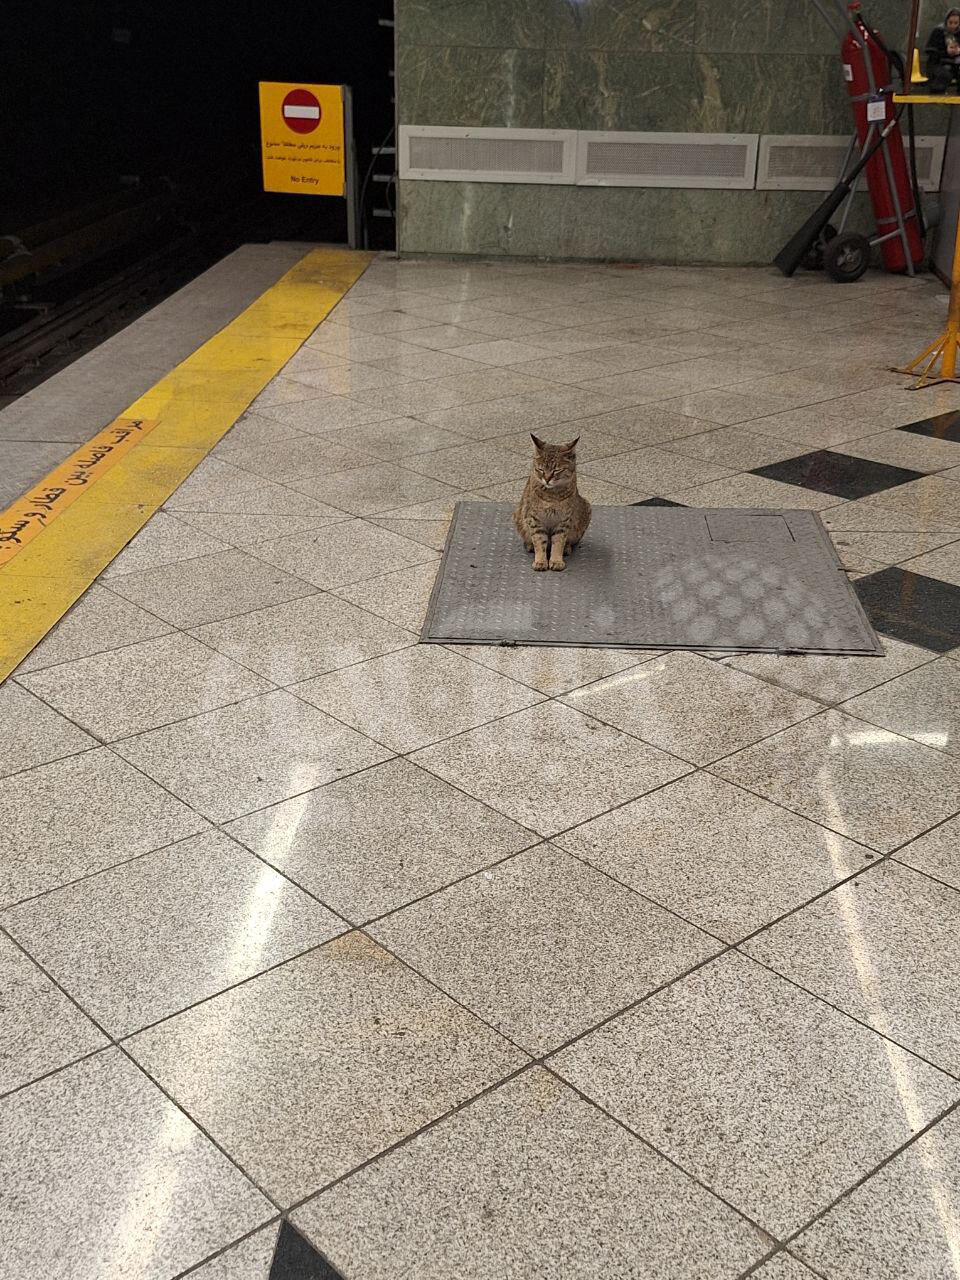 ریلکس کردن یک گربه وسط ایستگاه متروی تهران